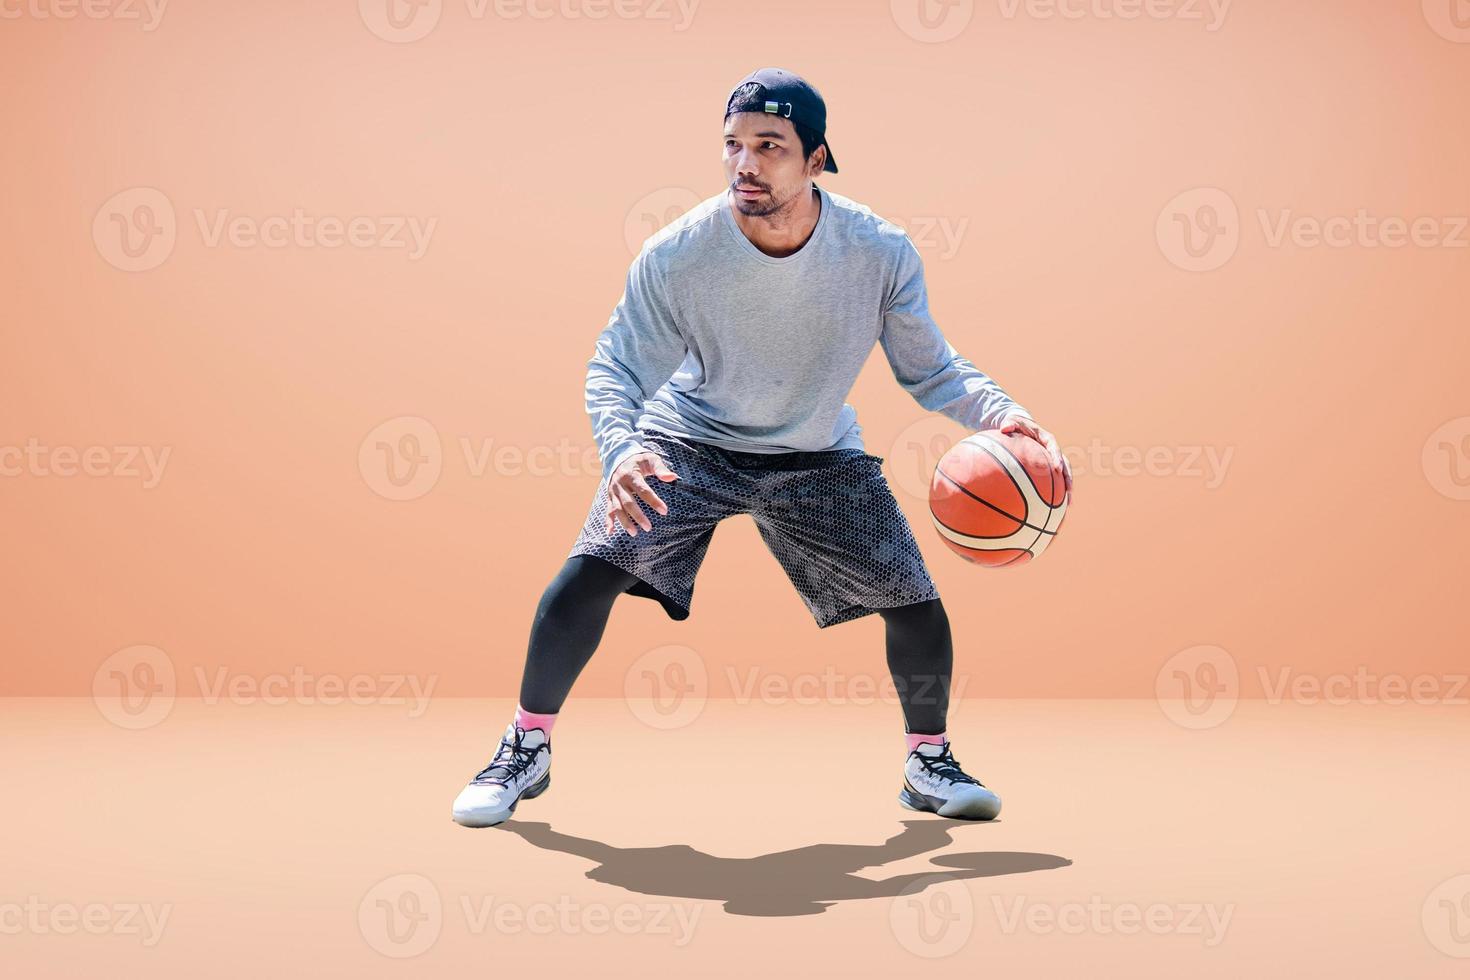 basketteur asiatique sur fond coloré photo